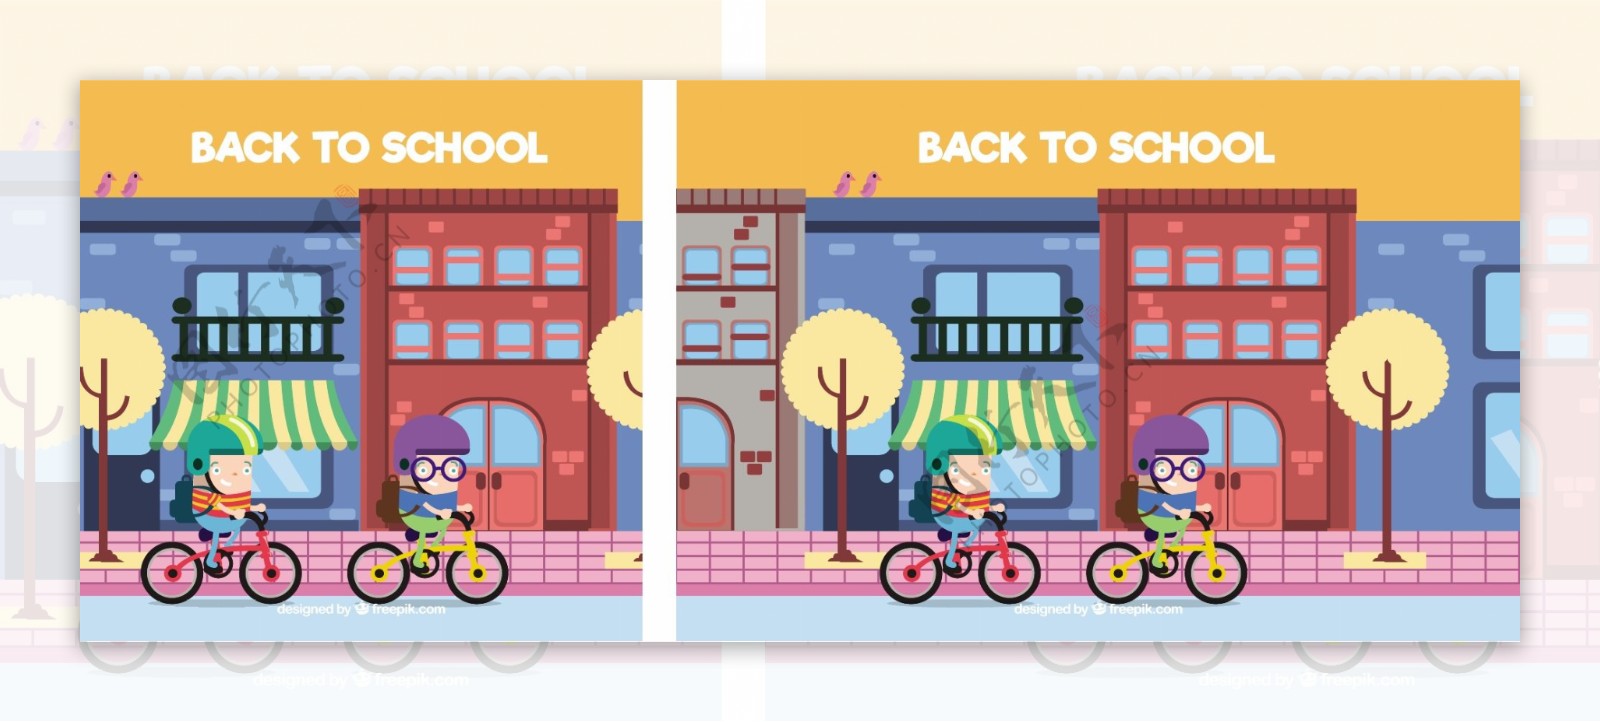 骑自行车上学的孩子